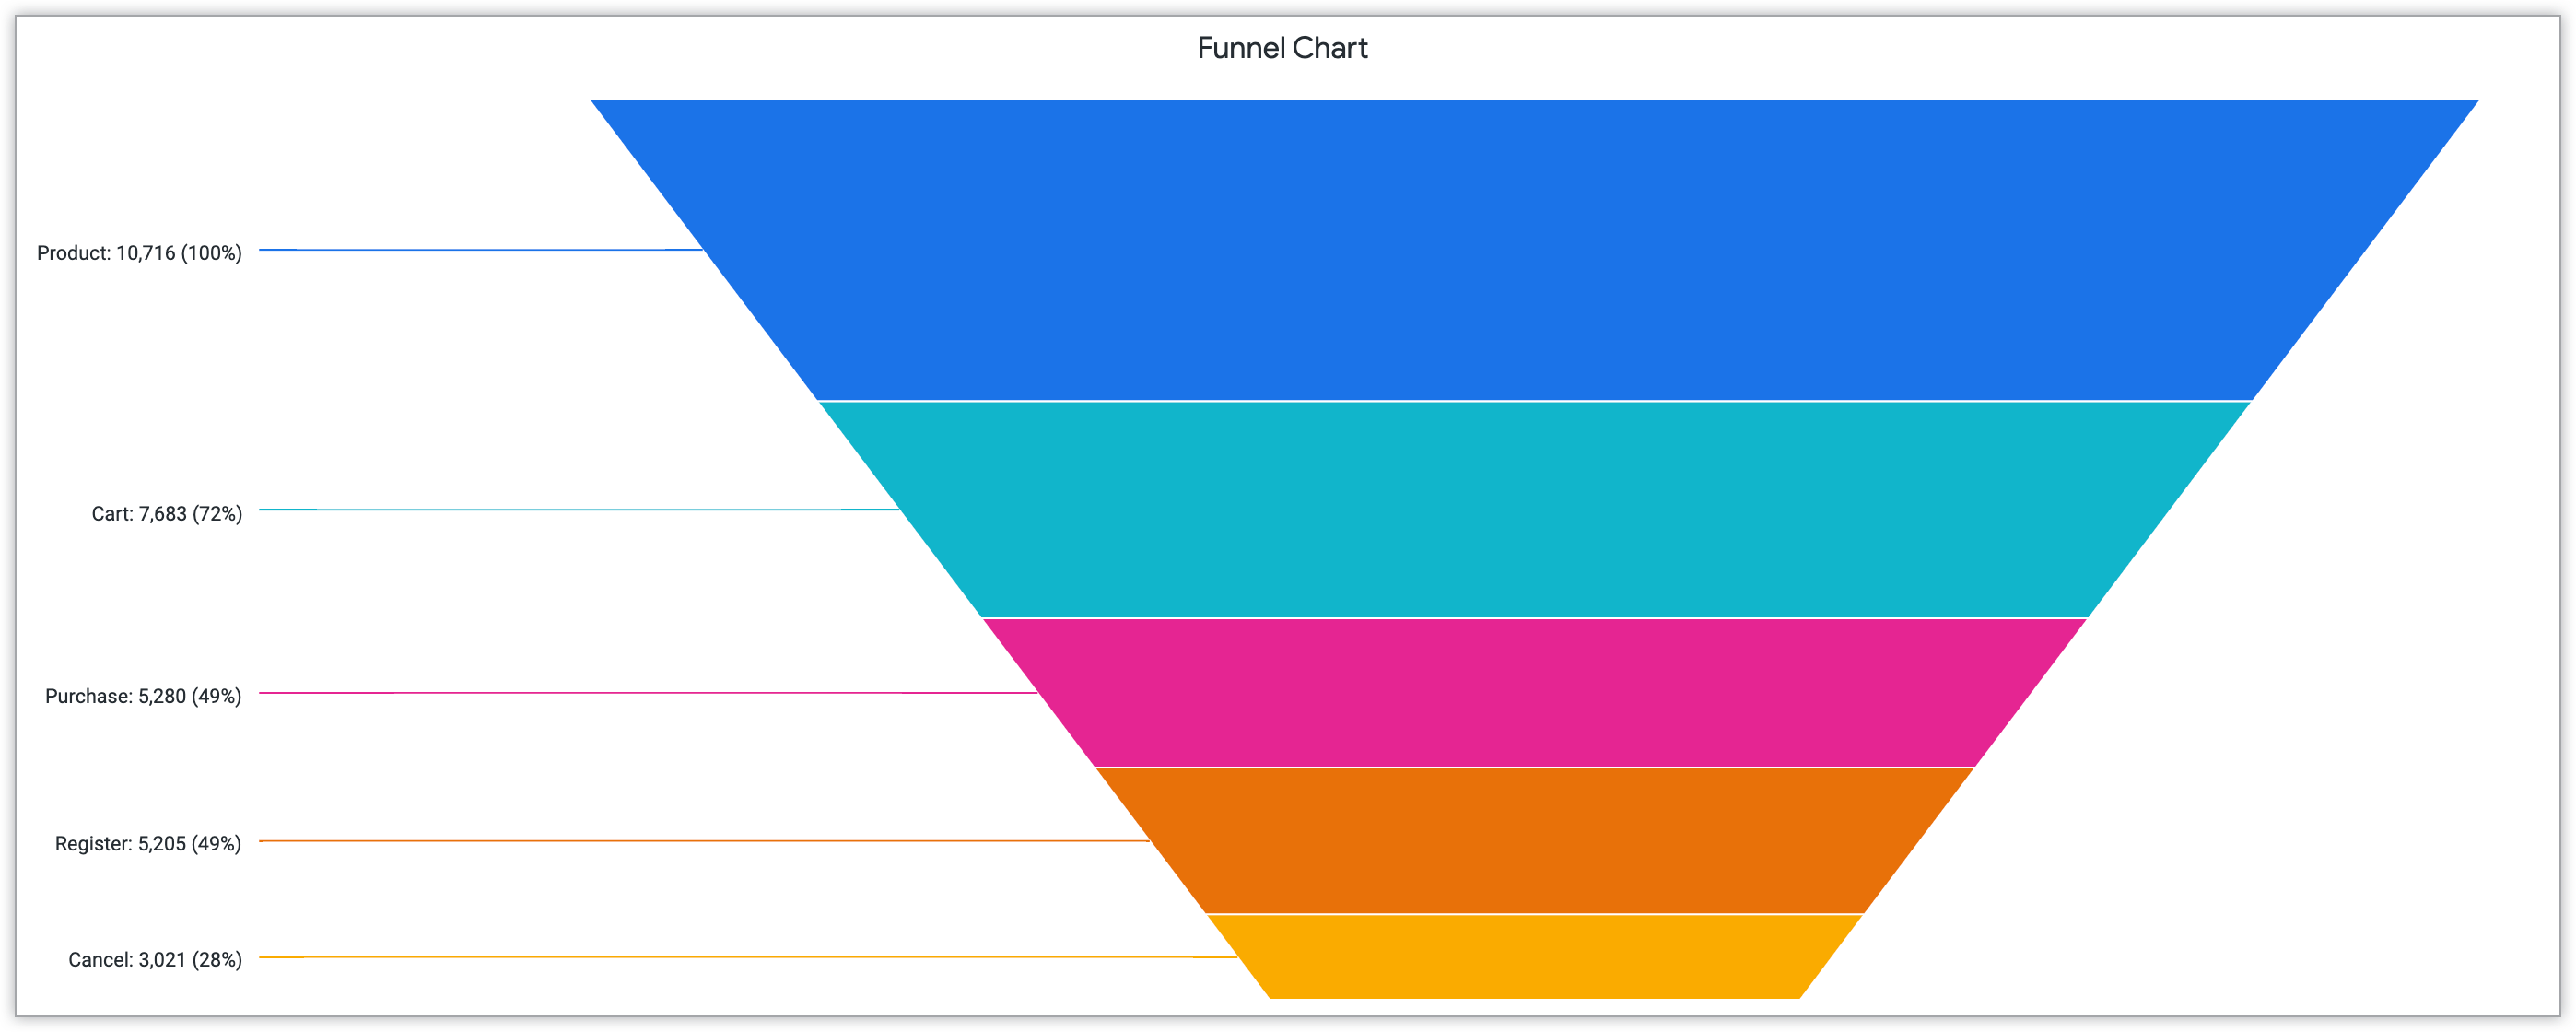 Gráfico de funil mostrando a porcentagem de ações de clientes nas fases "Produto", "Carrinho", "Compra", "Registrar" e "Cancelar".